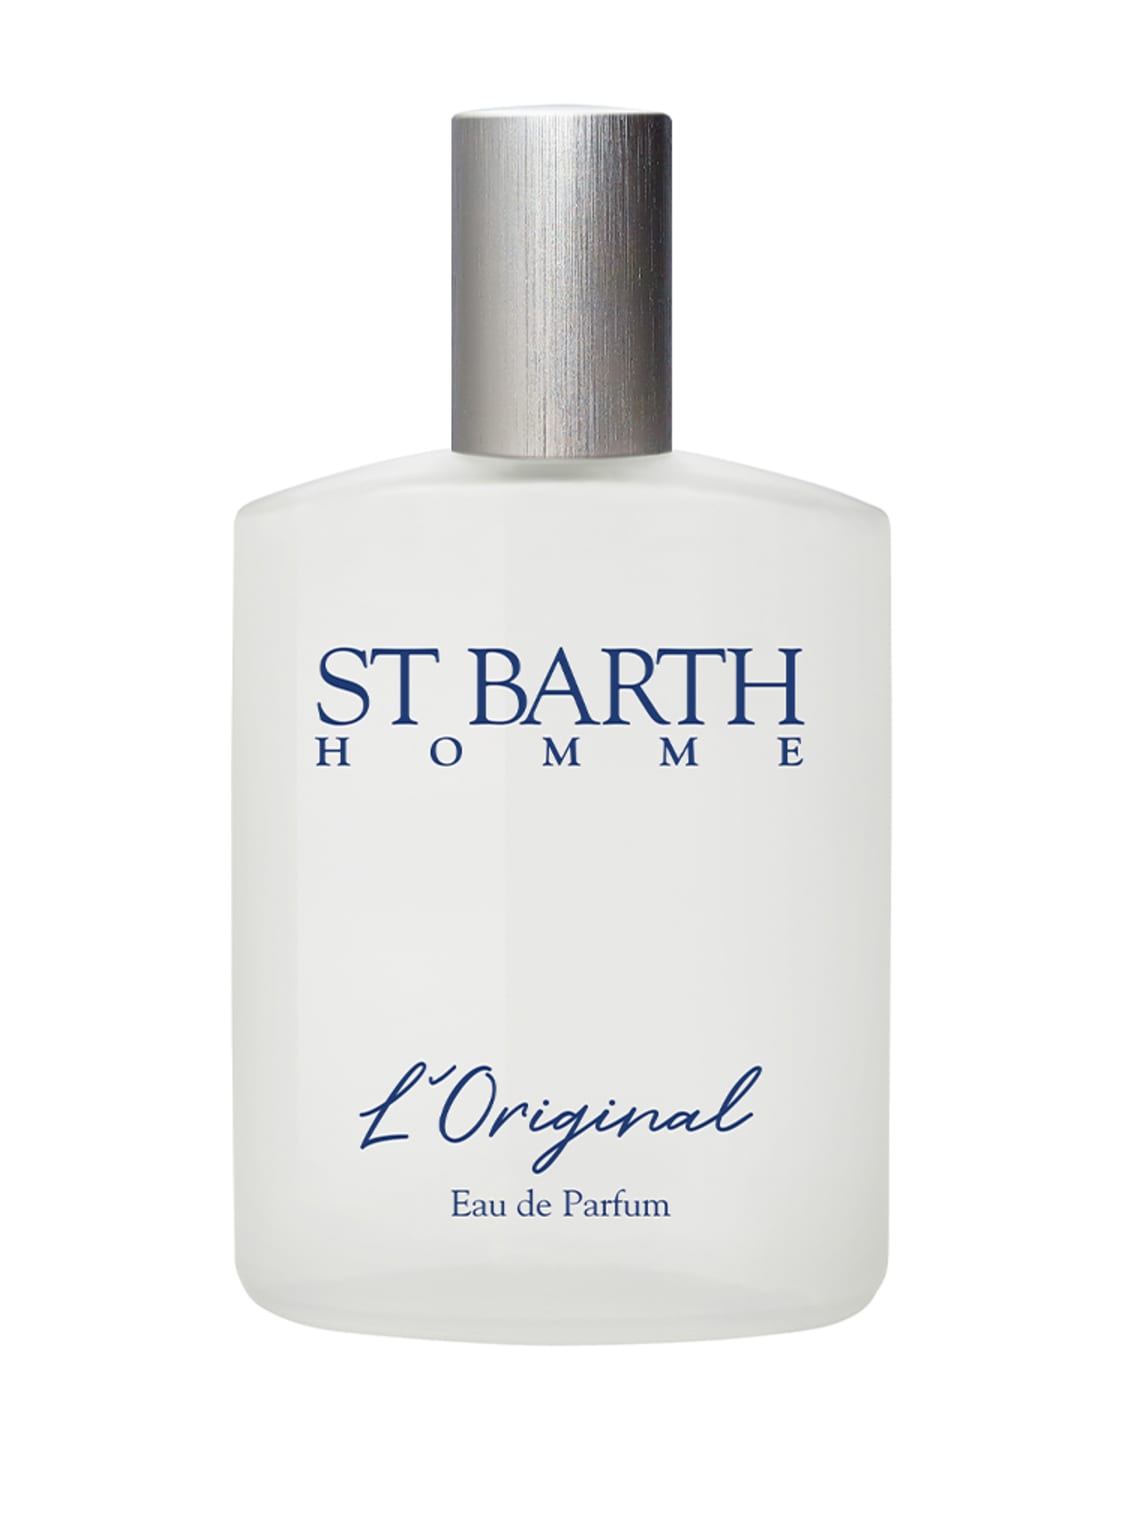 Image of Ligne St Barth Homme L'original Eau de Parfum 100 ml